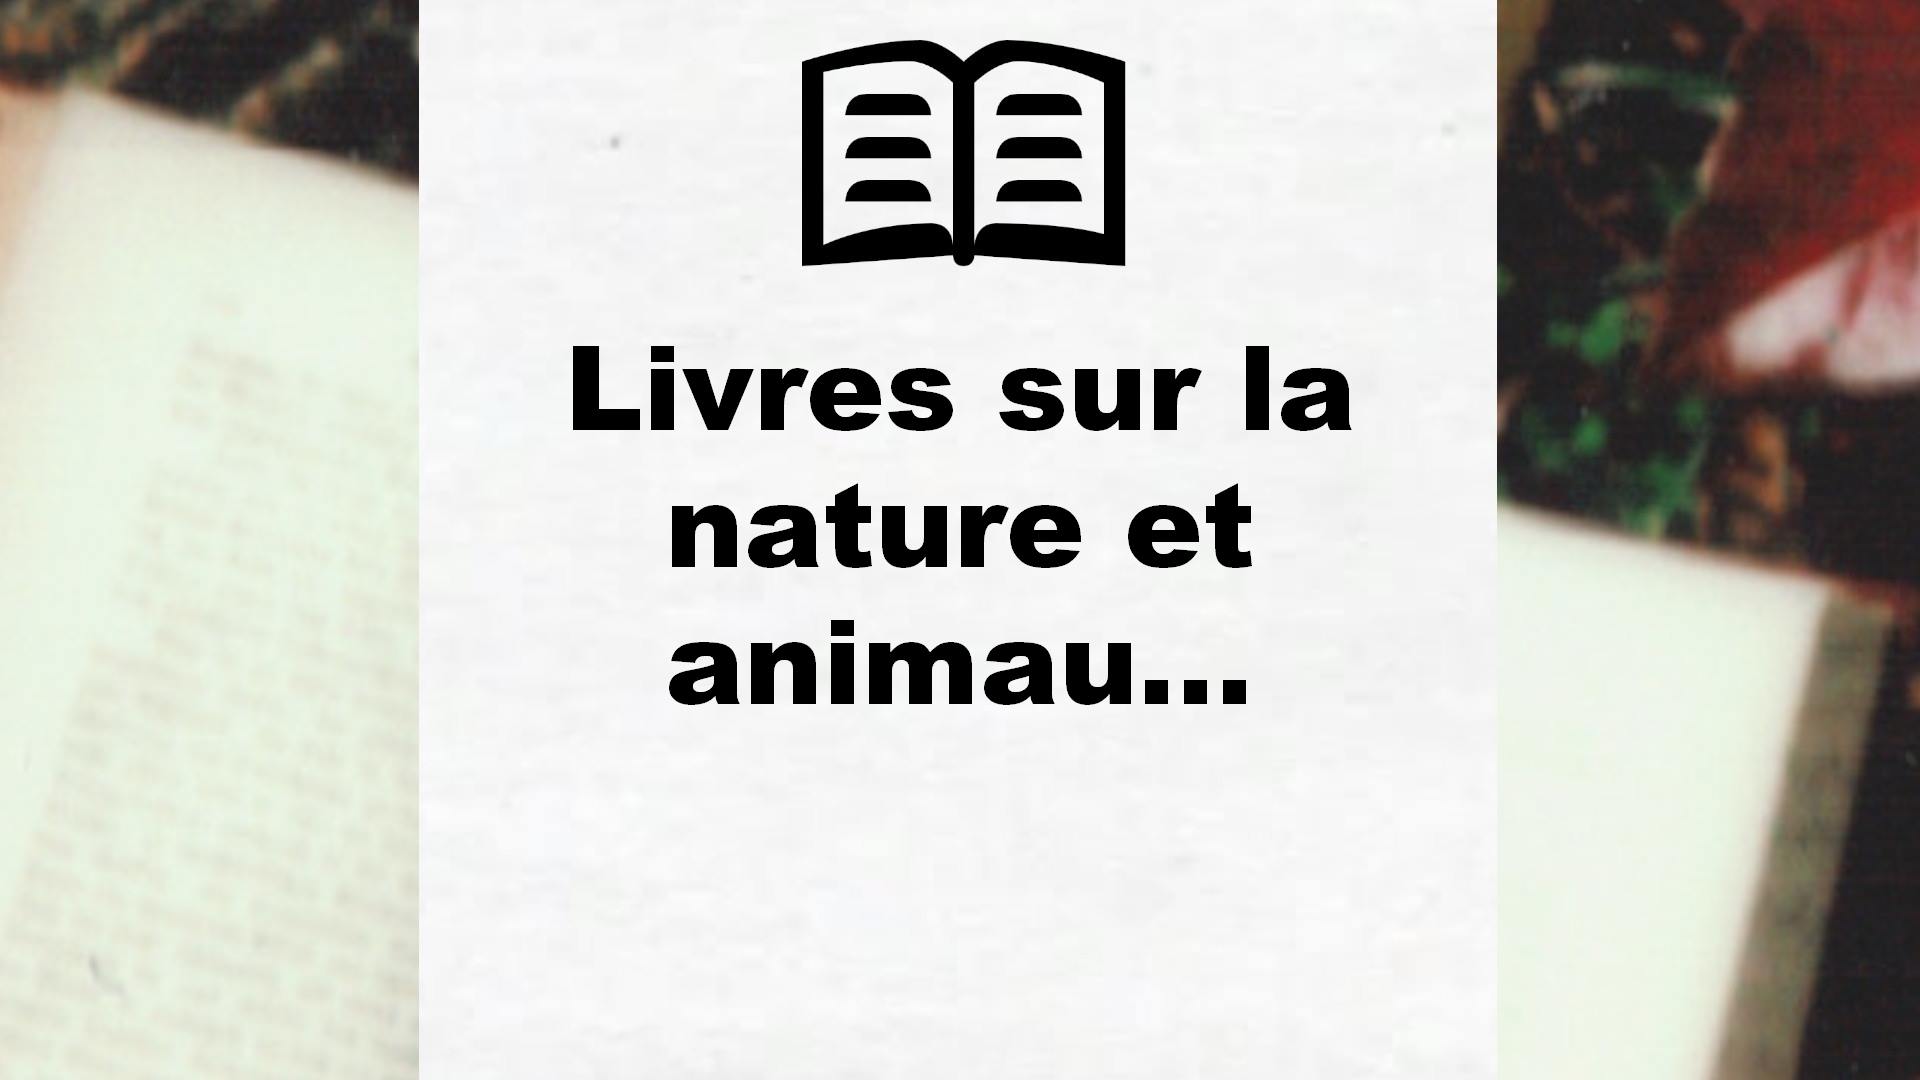 Livres sur la nature et animaux